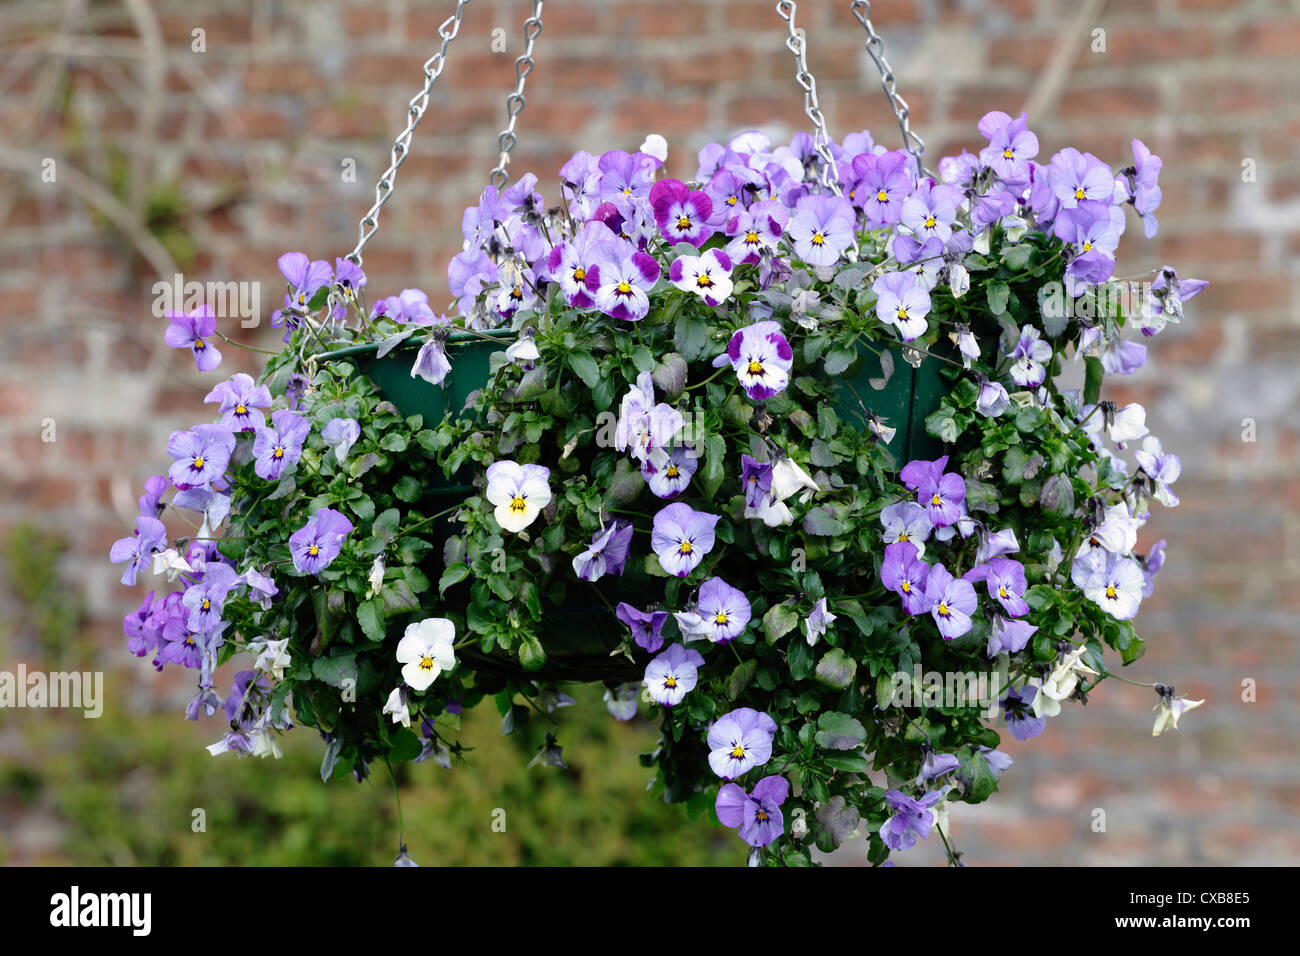 Hanging basket with summer violas, UK, Europe Stock Photo